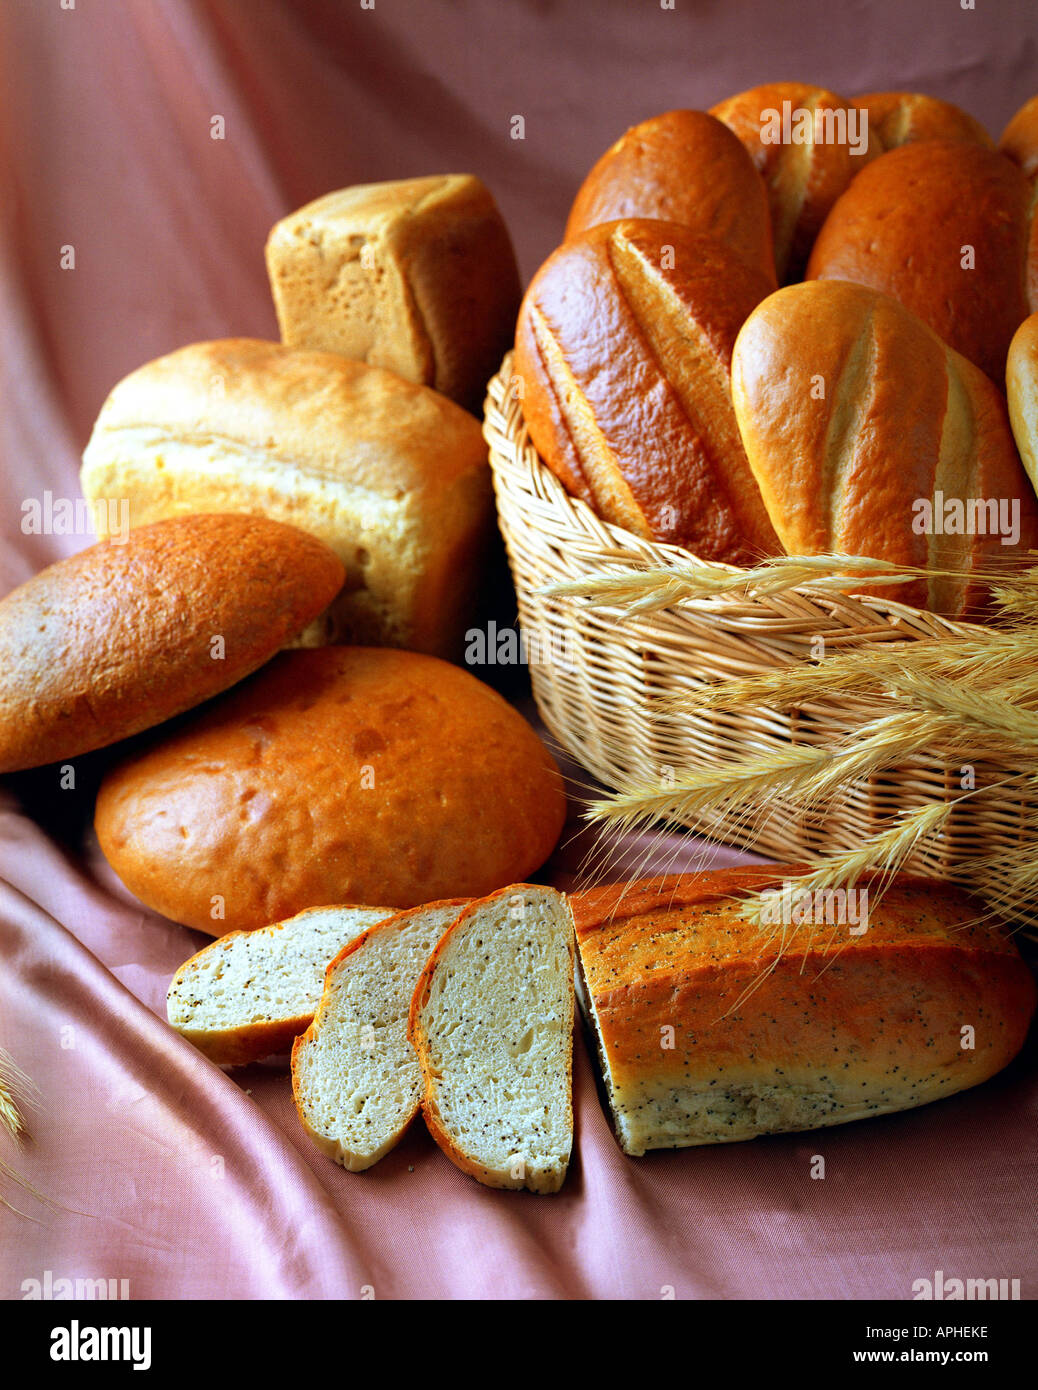 Un portrait de quelques miches de pain frais affiché dans un petit panier en osier Banque D'Images